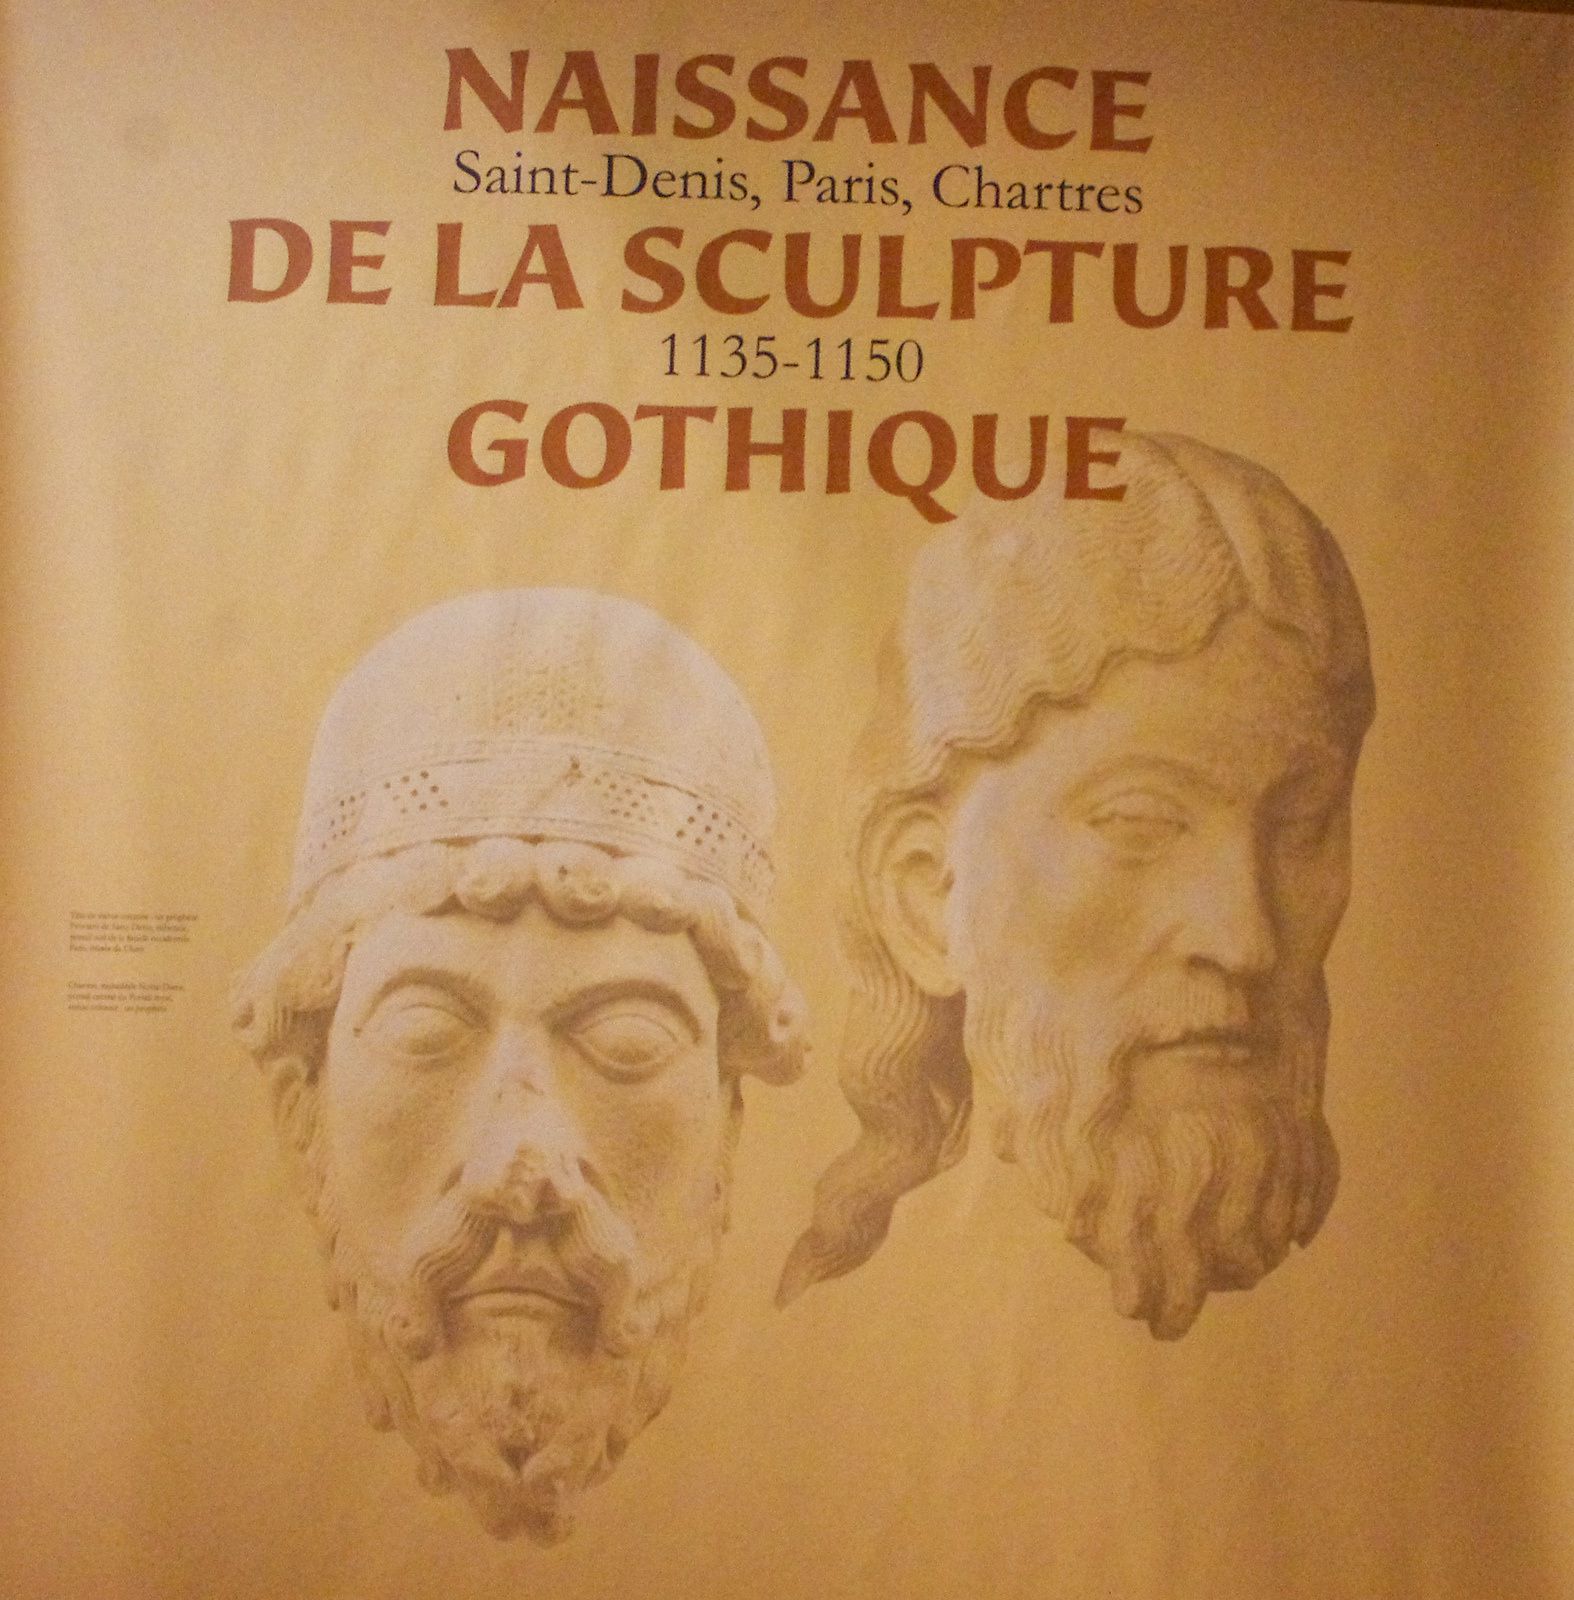 Exposition naissance de la sculpture gothique Saint-Denis, Paris, Chartres  1135 - 1150 au musée Cluny jusqu'au 21 janvier 2019 - Katatsumuri no Yume